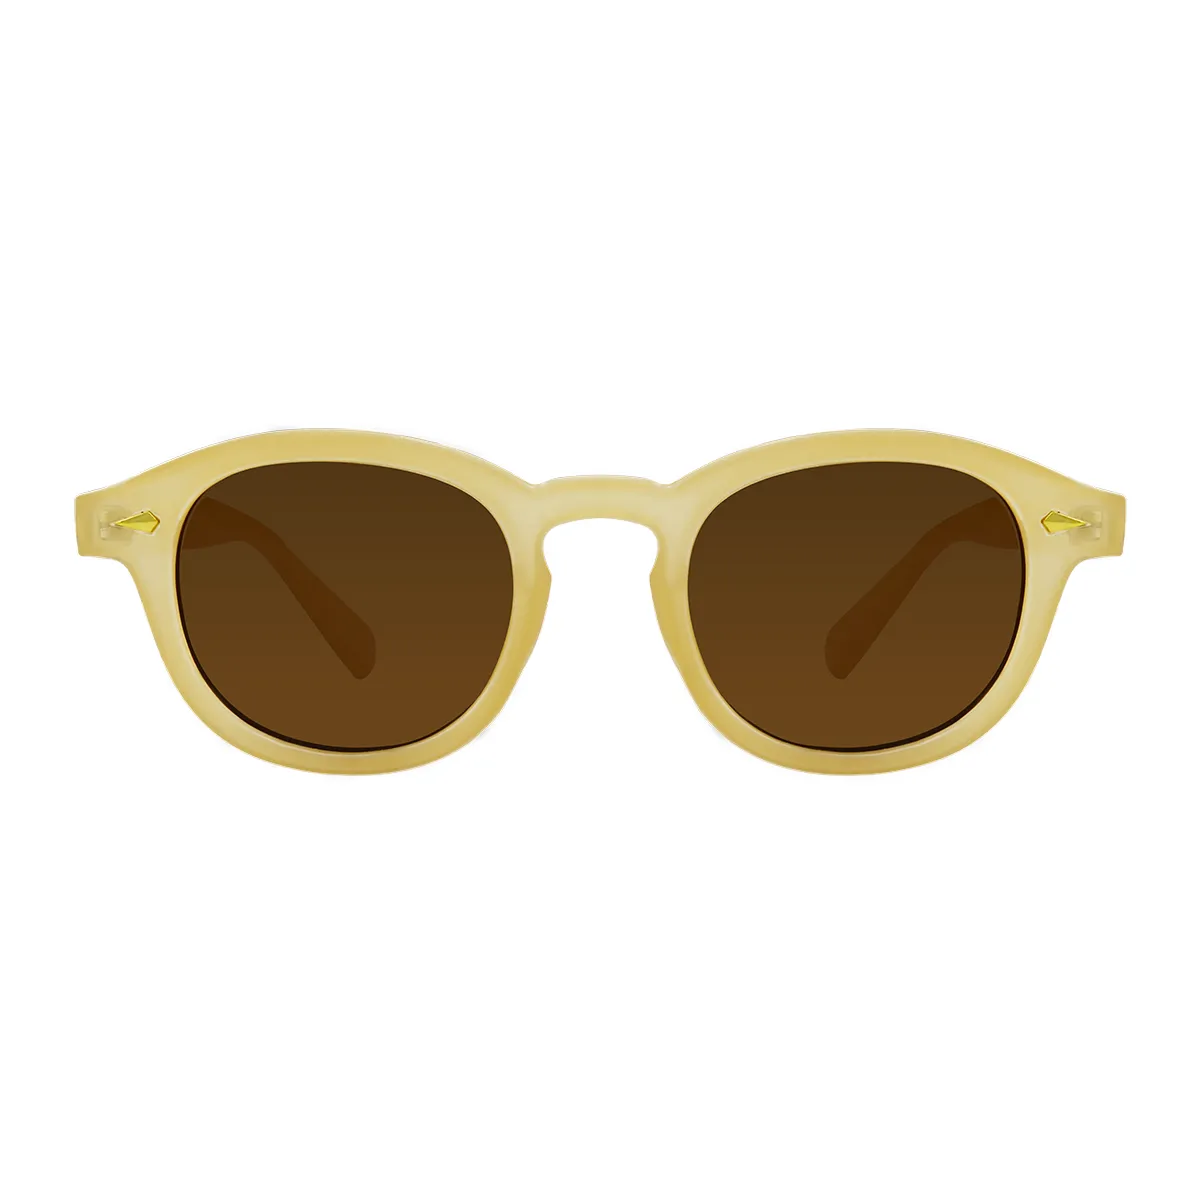 Neutral - glasses Off-white Sunglasses for Men & Women